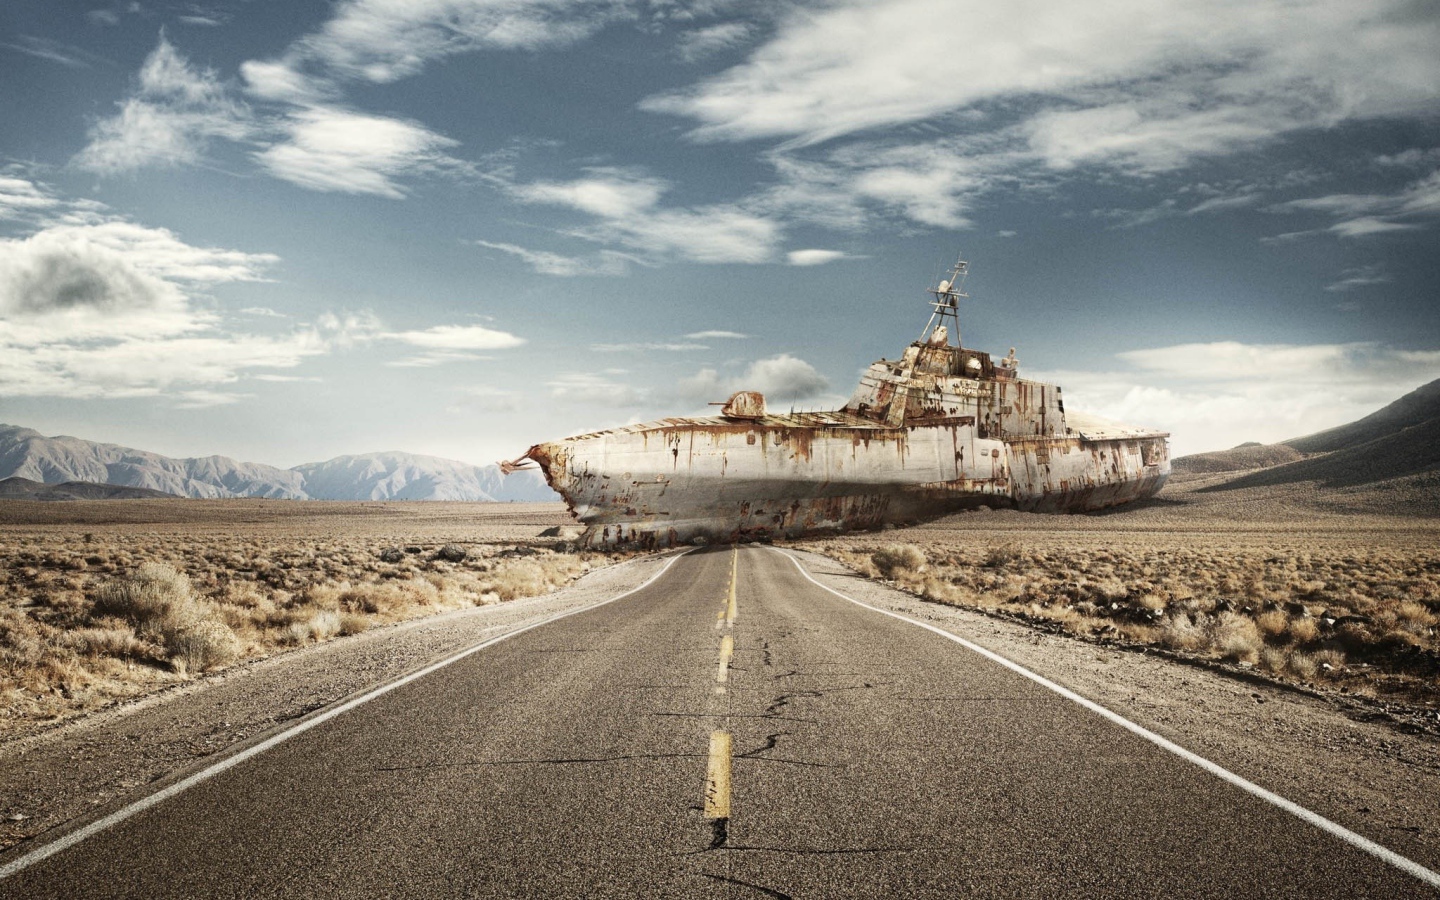 Ржавый корабль преградил дорогу в пустыне